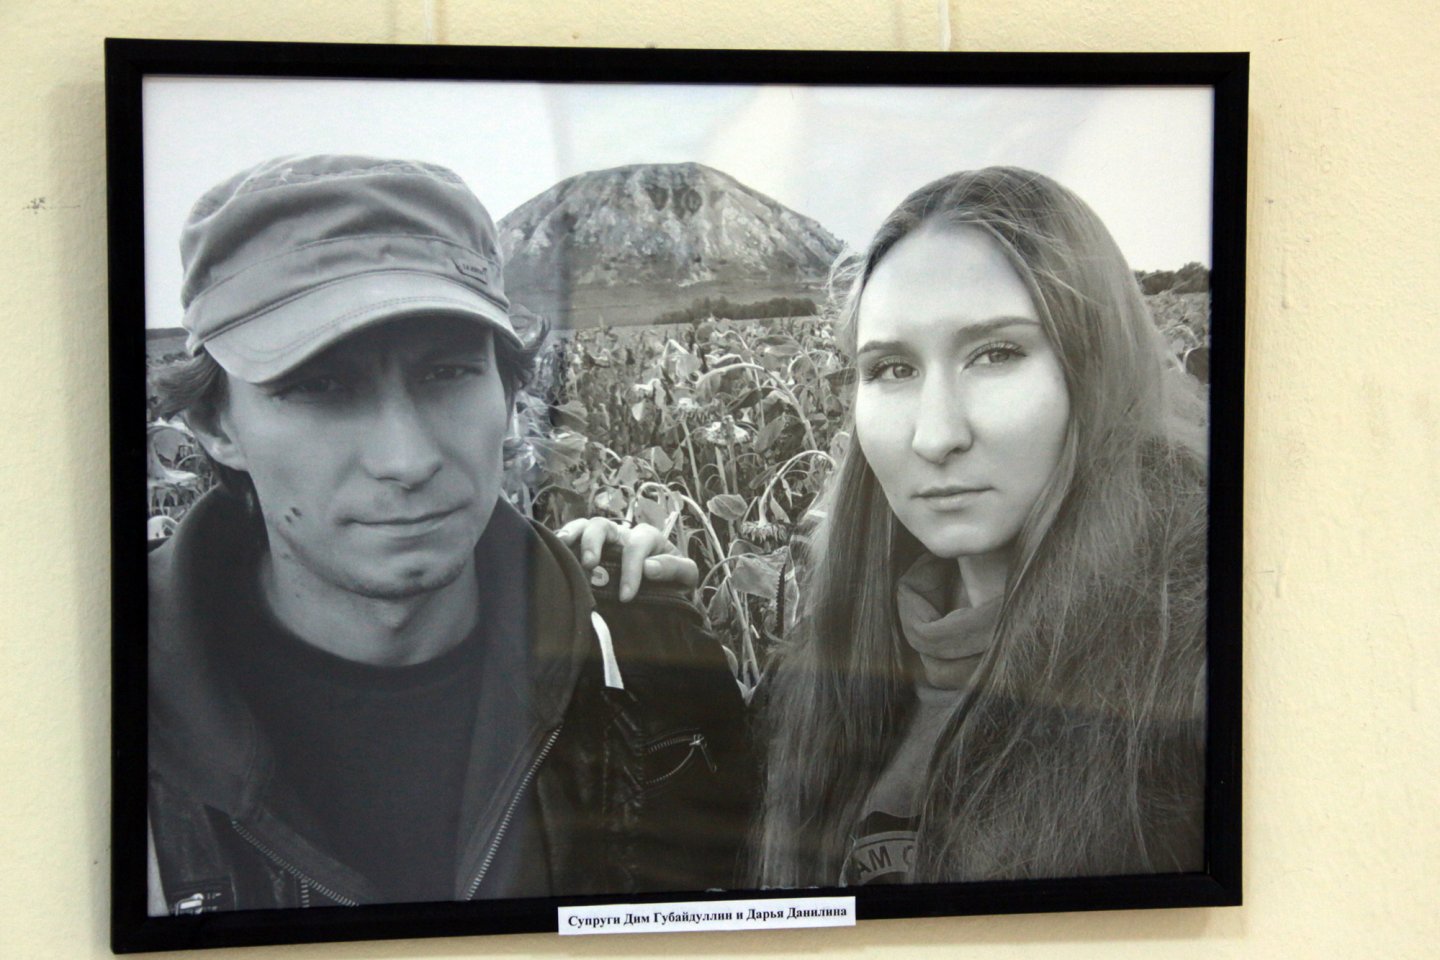 В галерее «Ижад» открылась выставка графики живописи молодых художников Дима Губайдуллина и Дарьи Данилиной